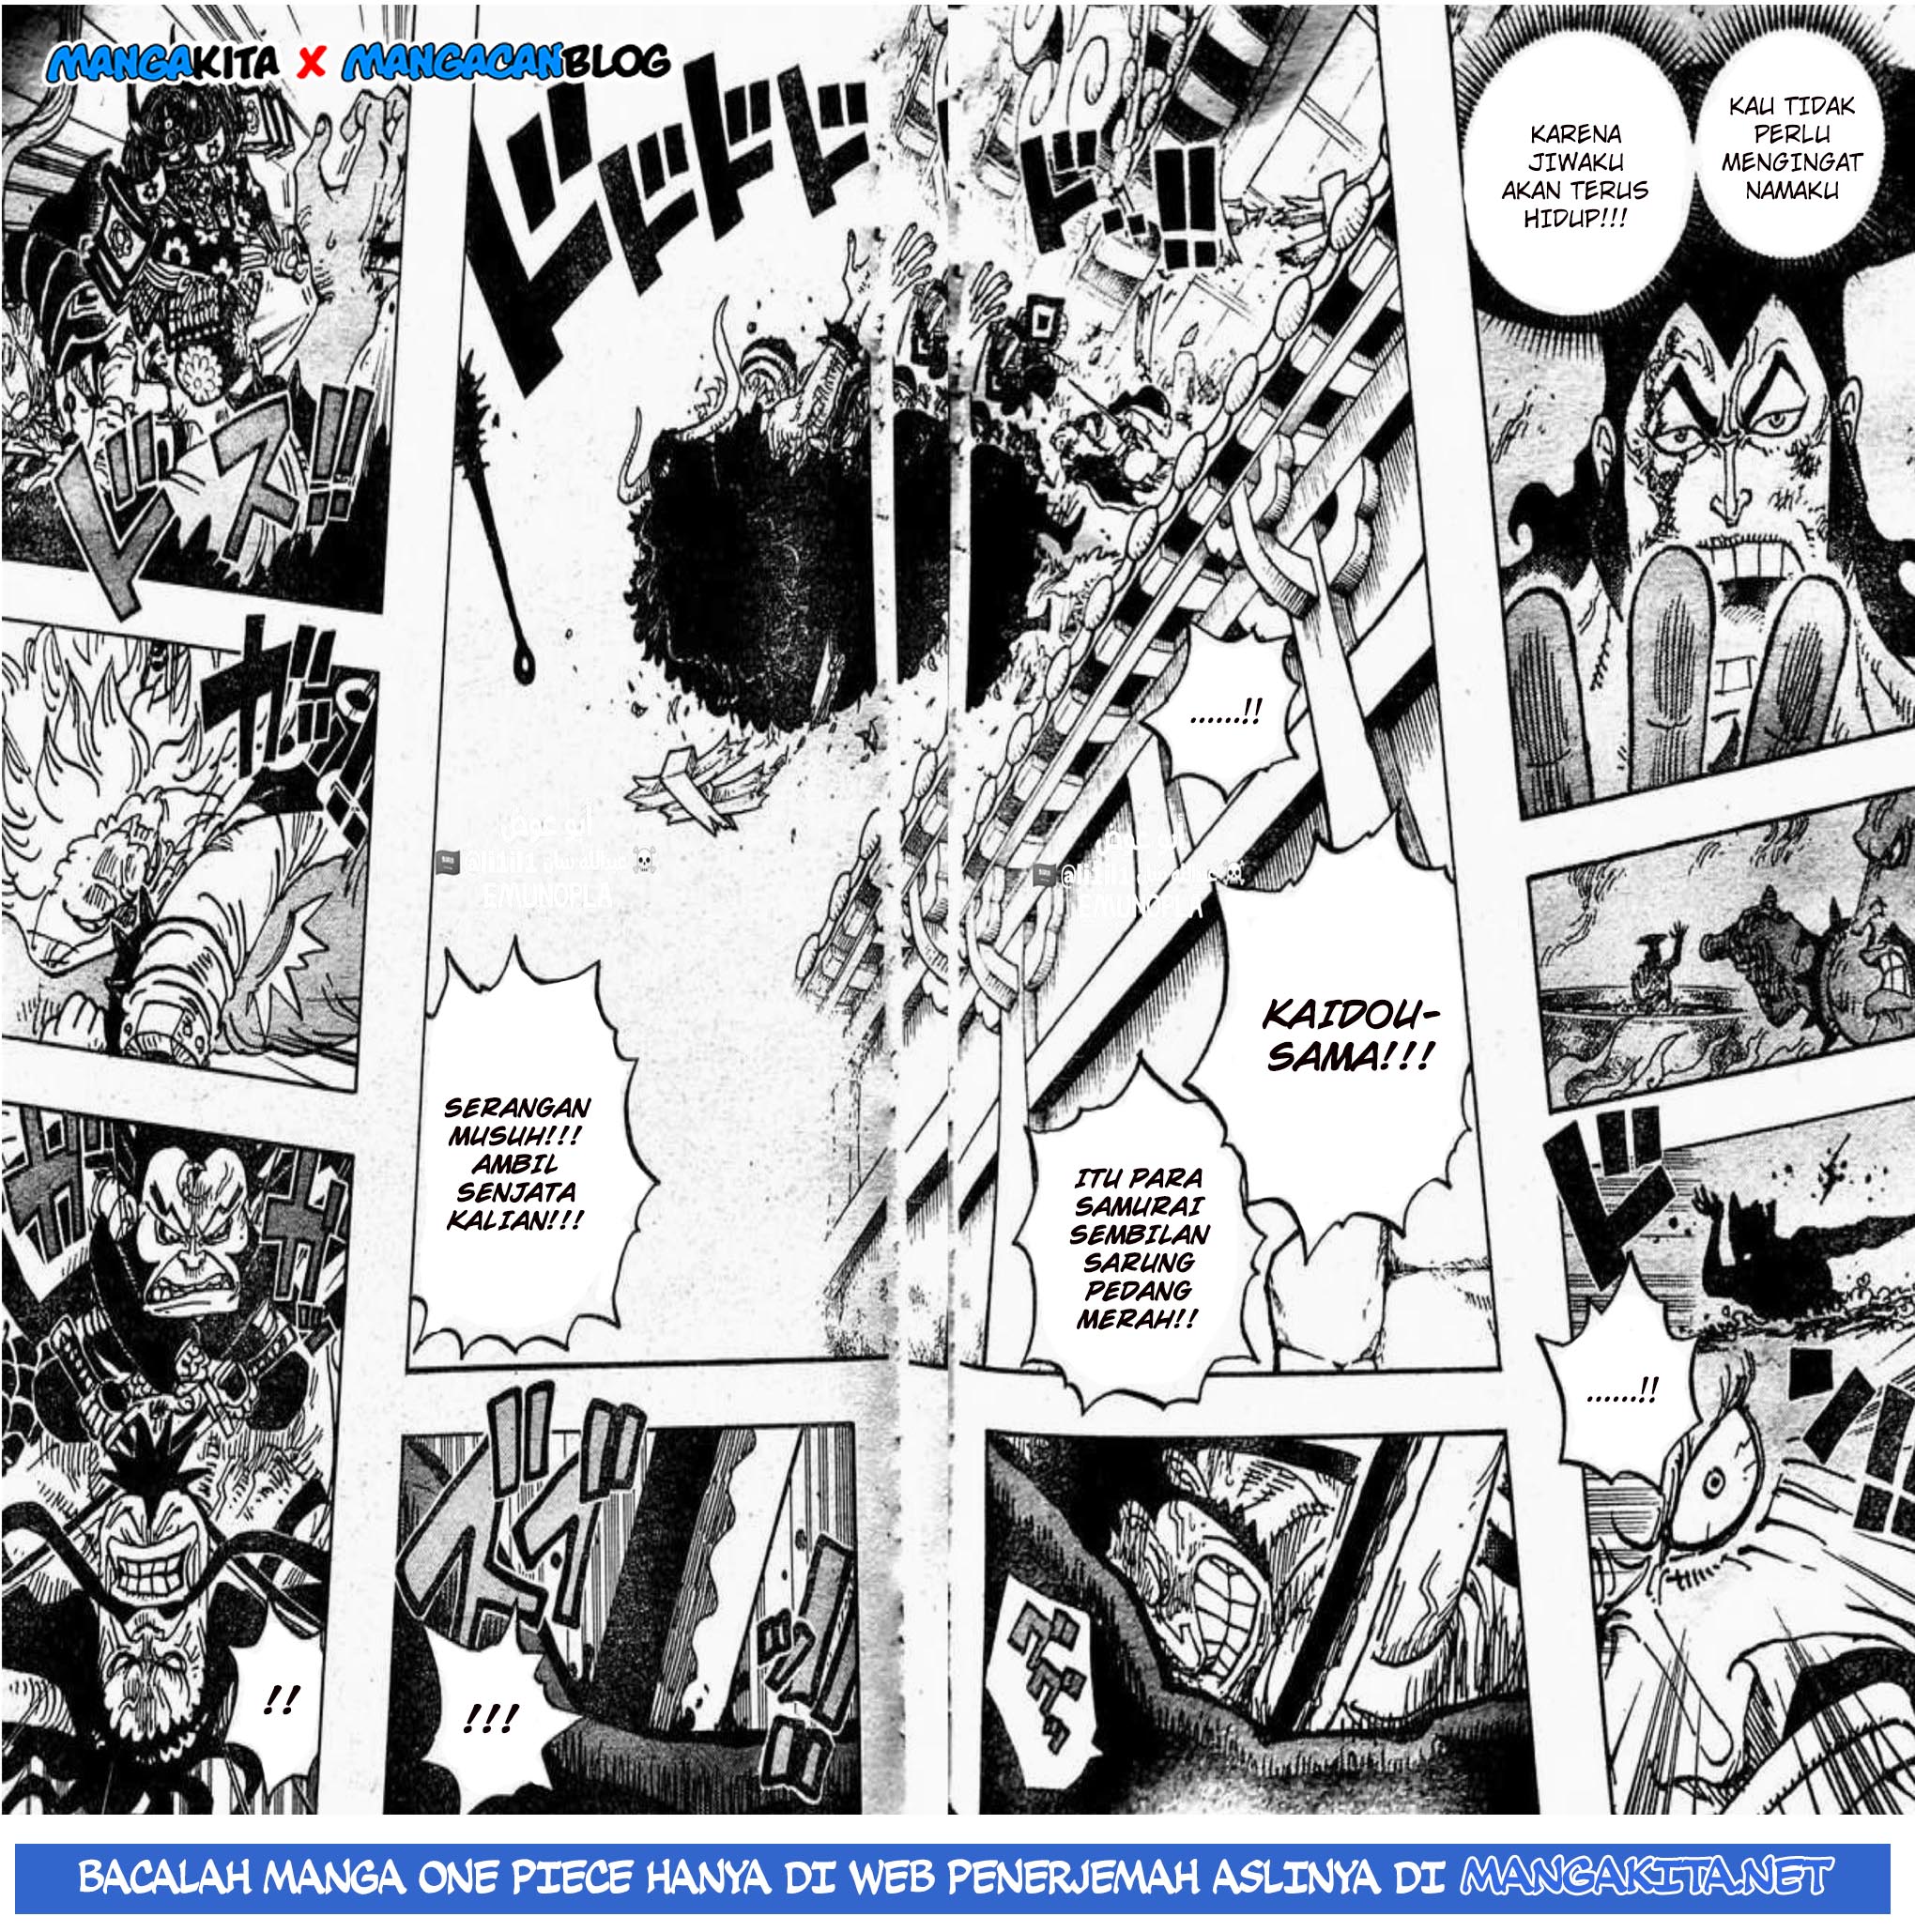 One Piece Chapter 987 Mangakyo